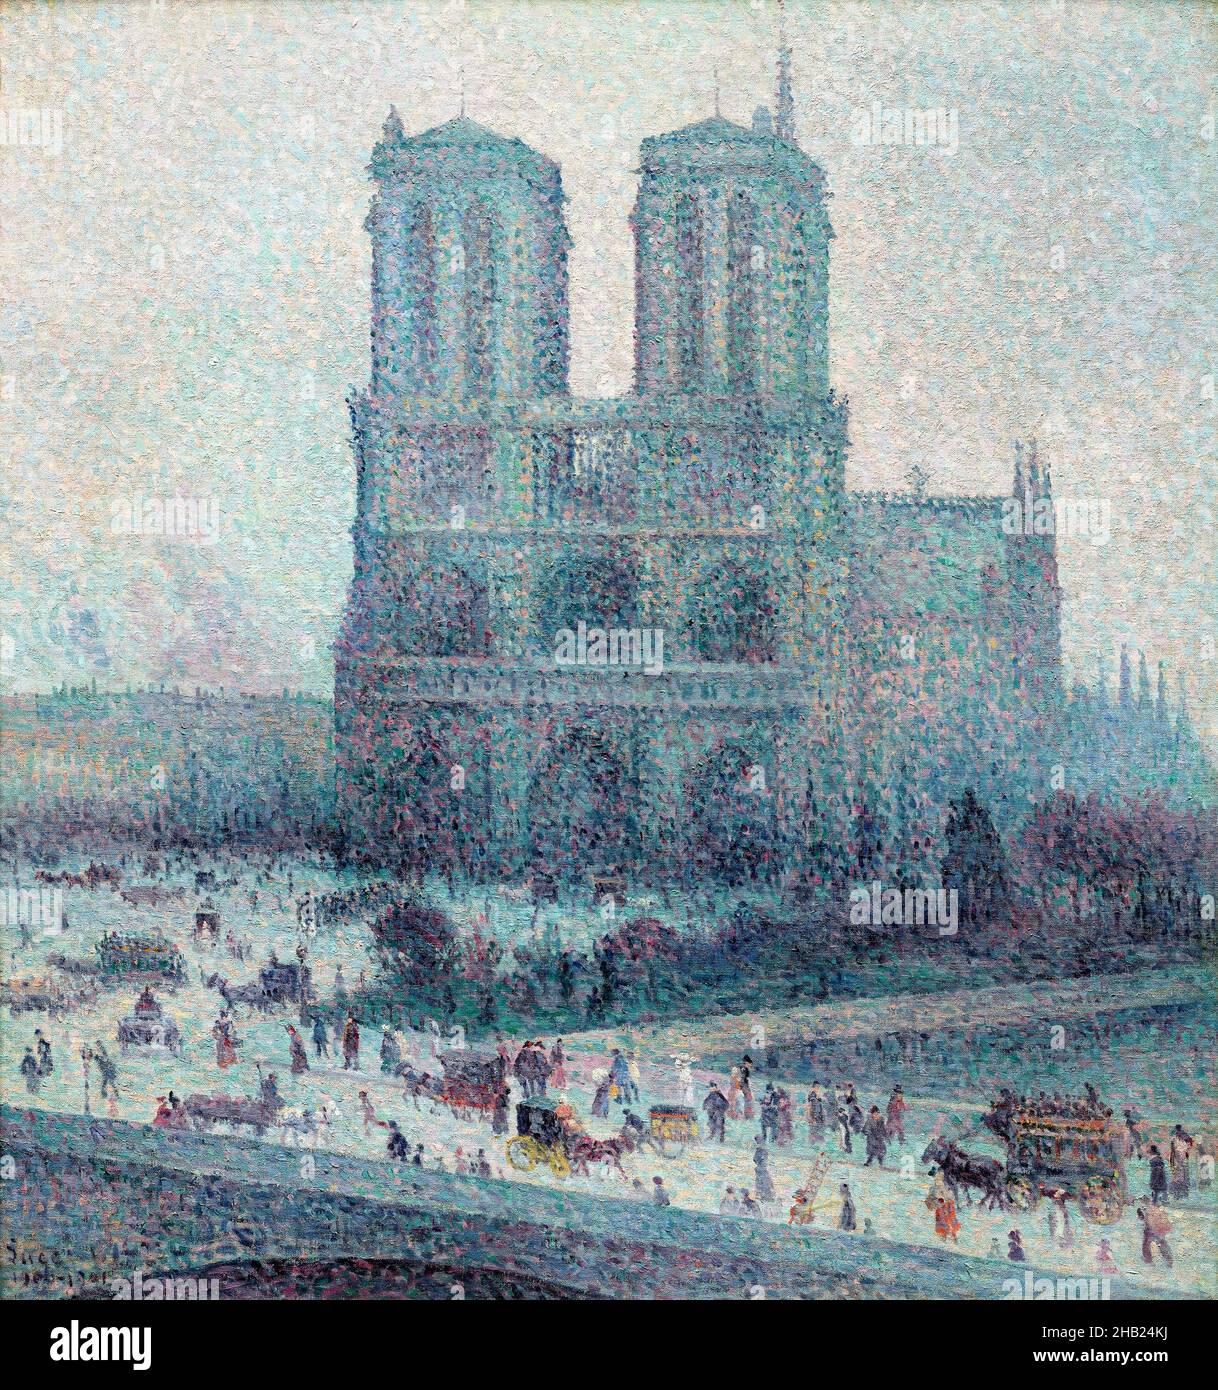 Notre-Dame, Paris par Maximilien Luce (1858-1941), huile sur toile, c.1900/01 Banque D'Images